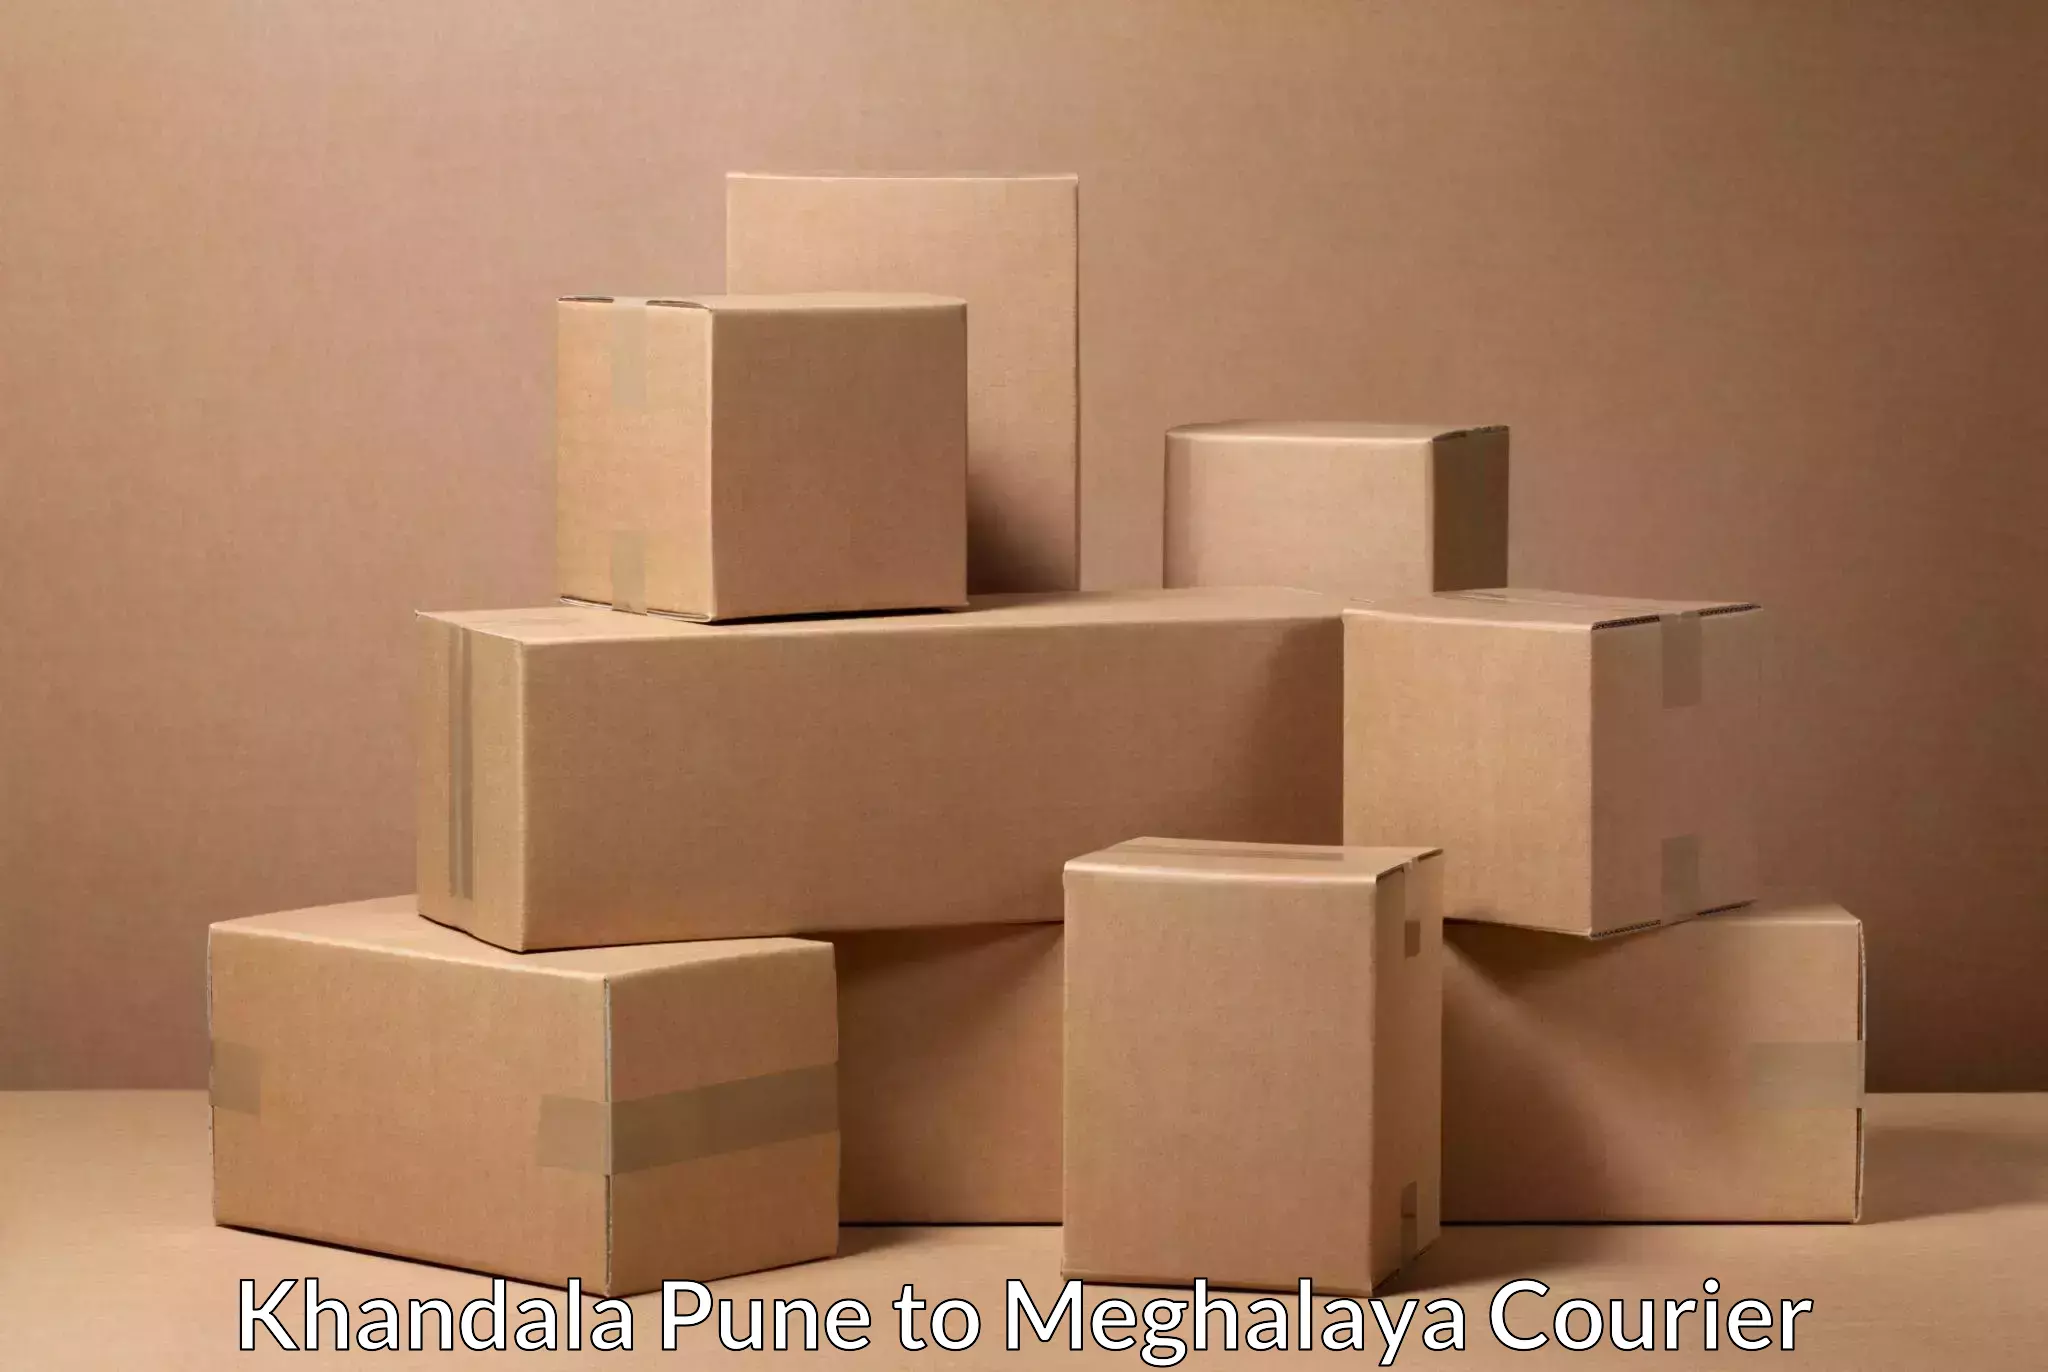 Affordable shipping rates Khandala Pune to Meghalaya